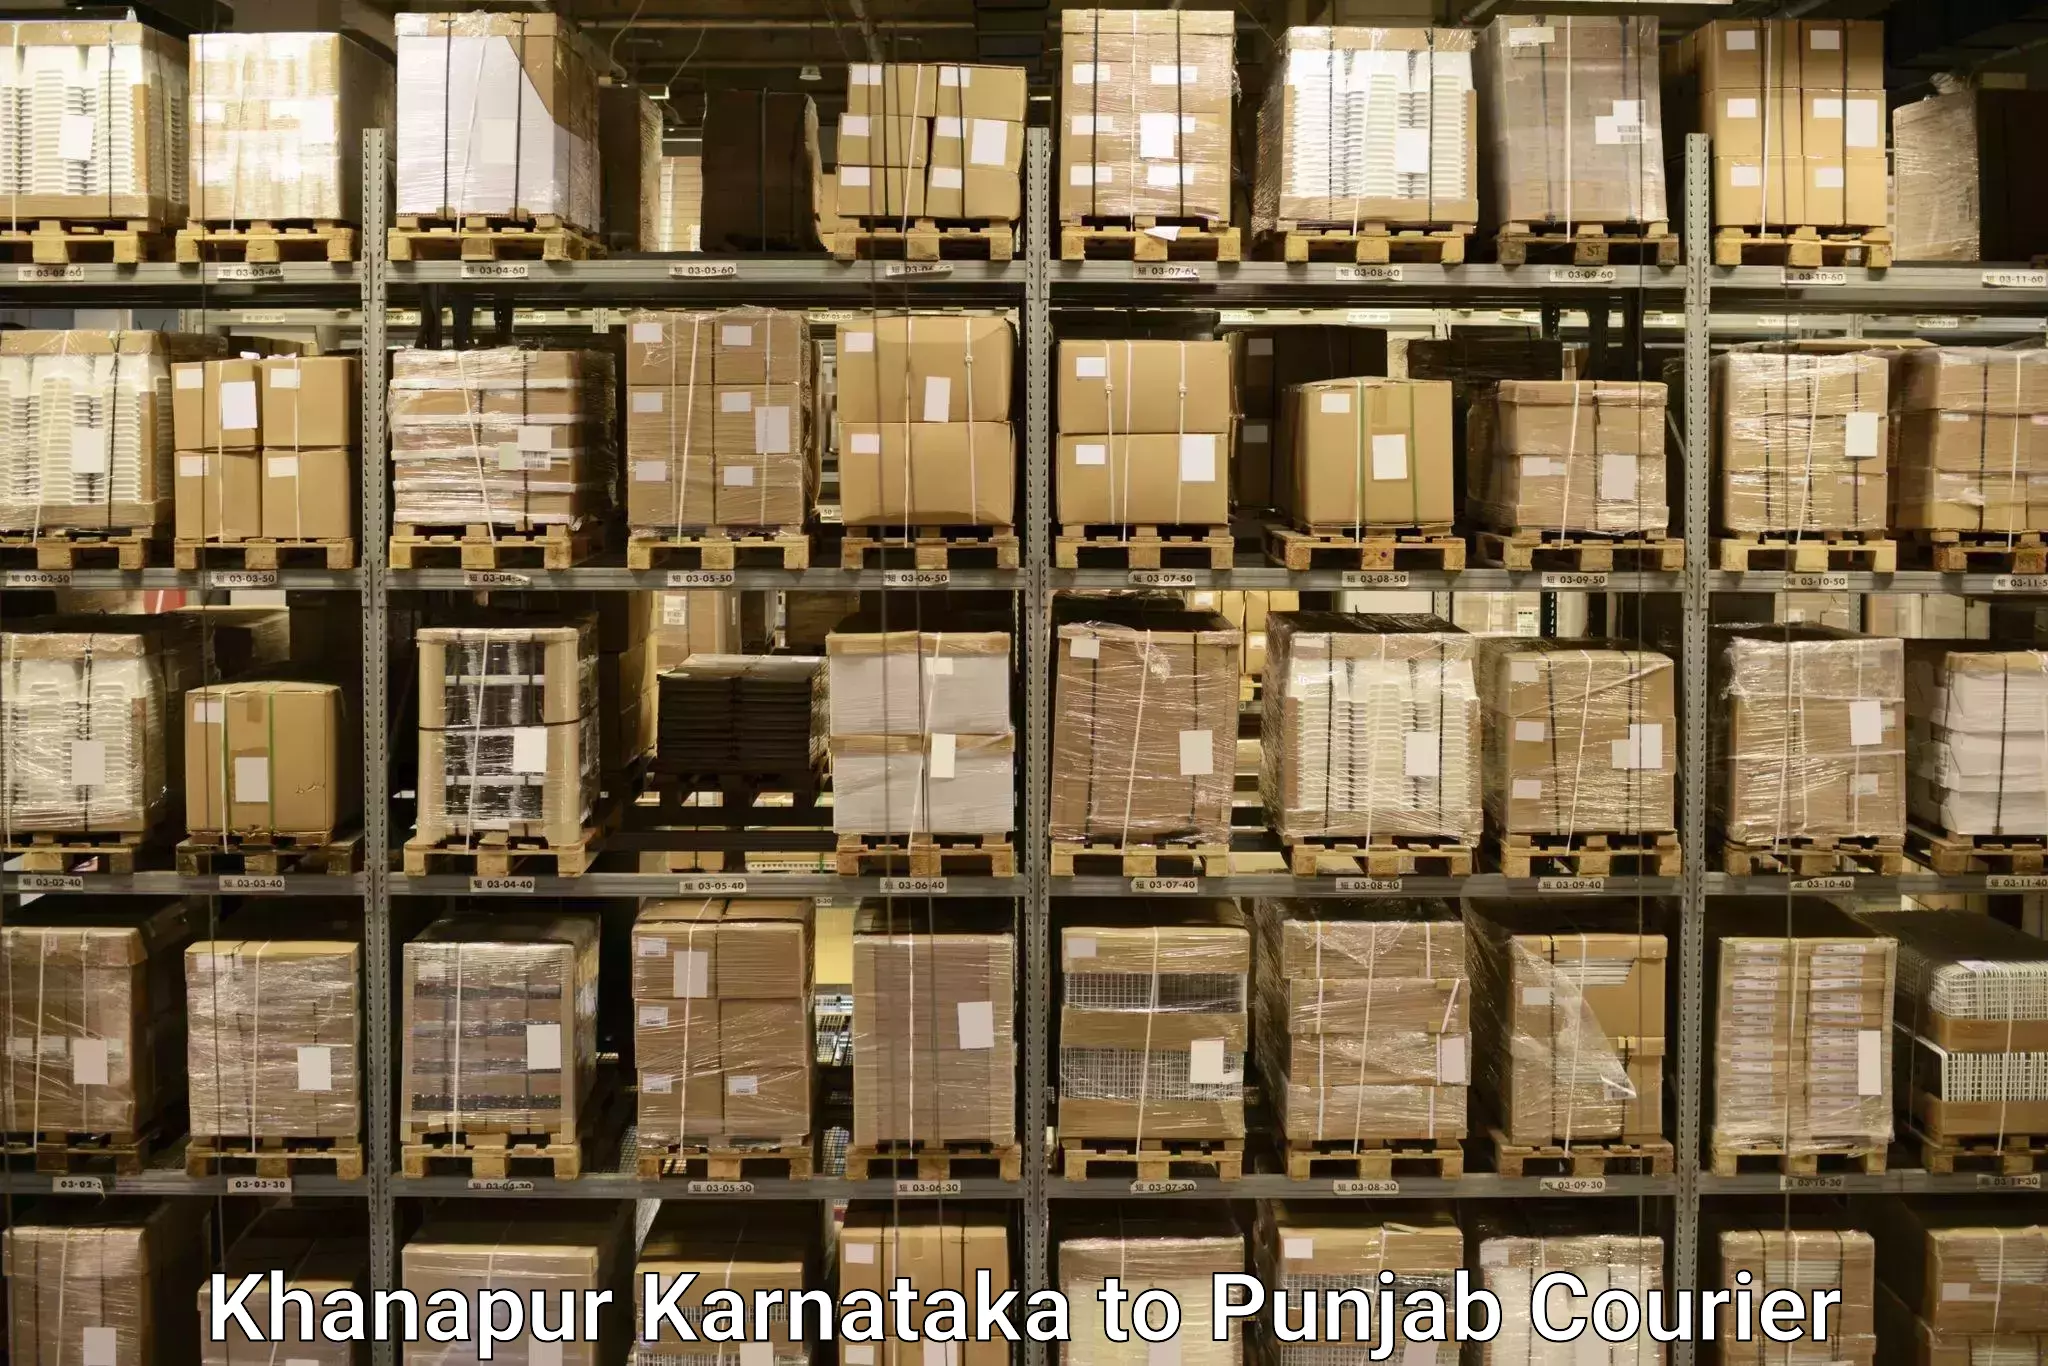 Efficient luggage delivery in Khanapur Karnataka to Central University of Punjab Bathinda